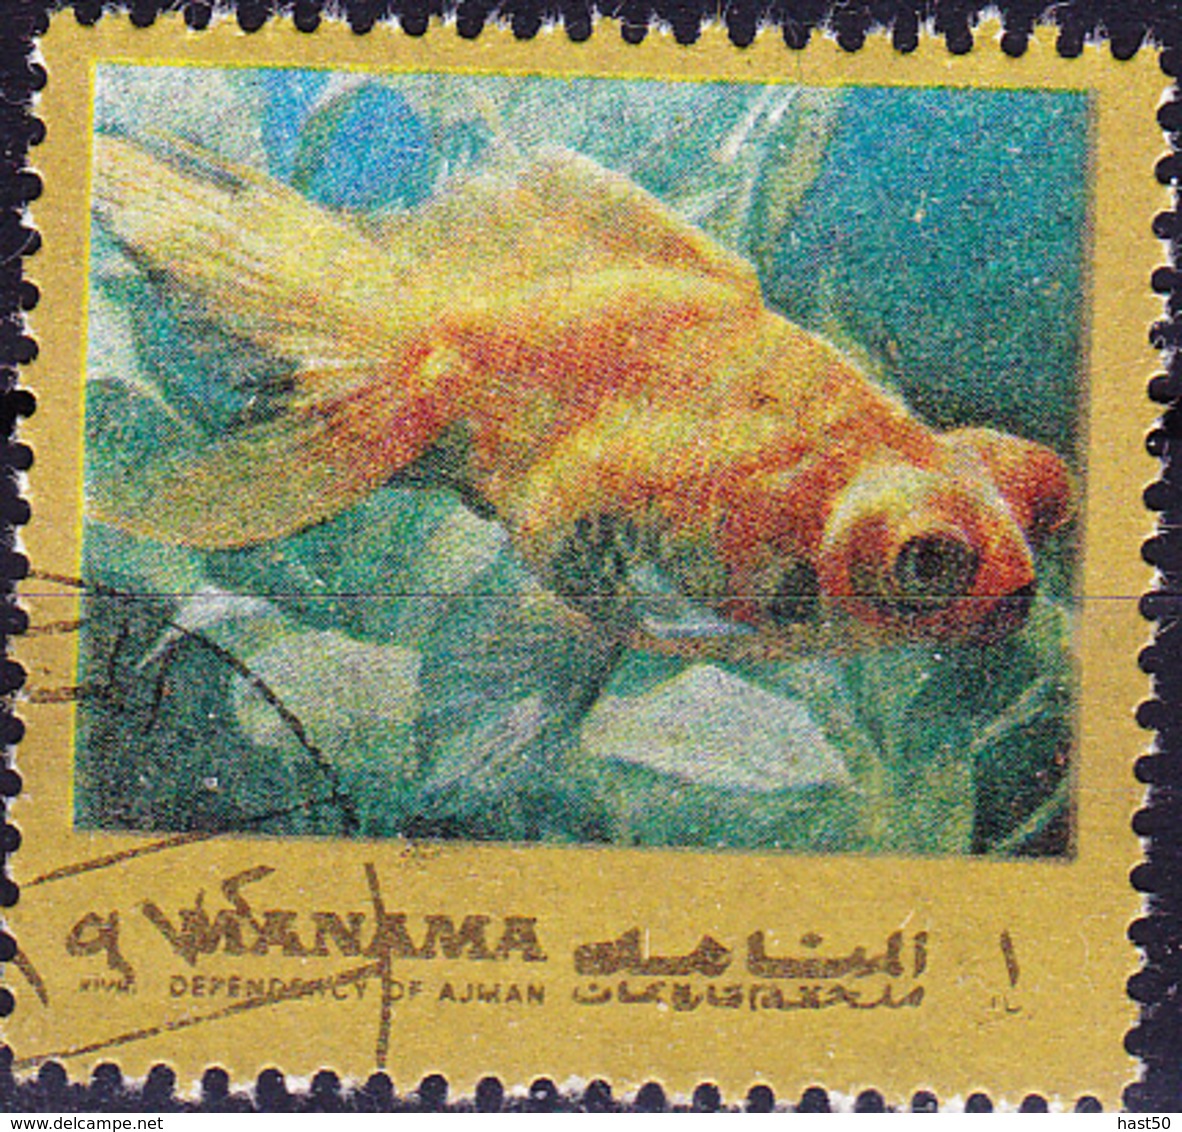 Ajman-Manama - Fische Des Mittelmeeres (MiNr: 935aA) 1972 - Gest Used Obl - Manama